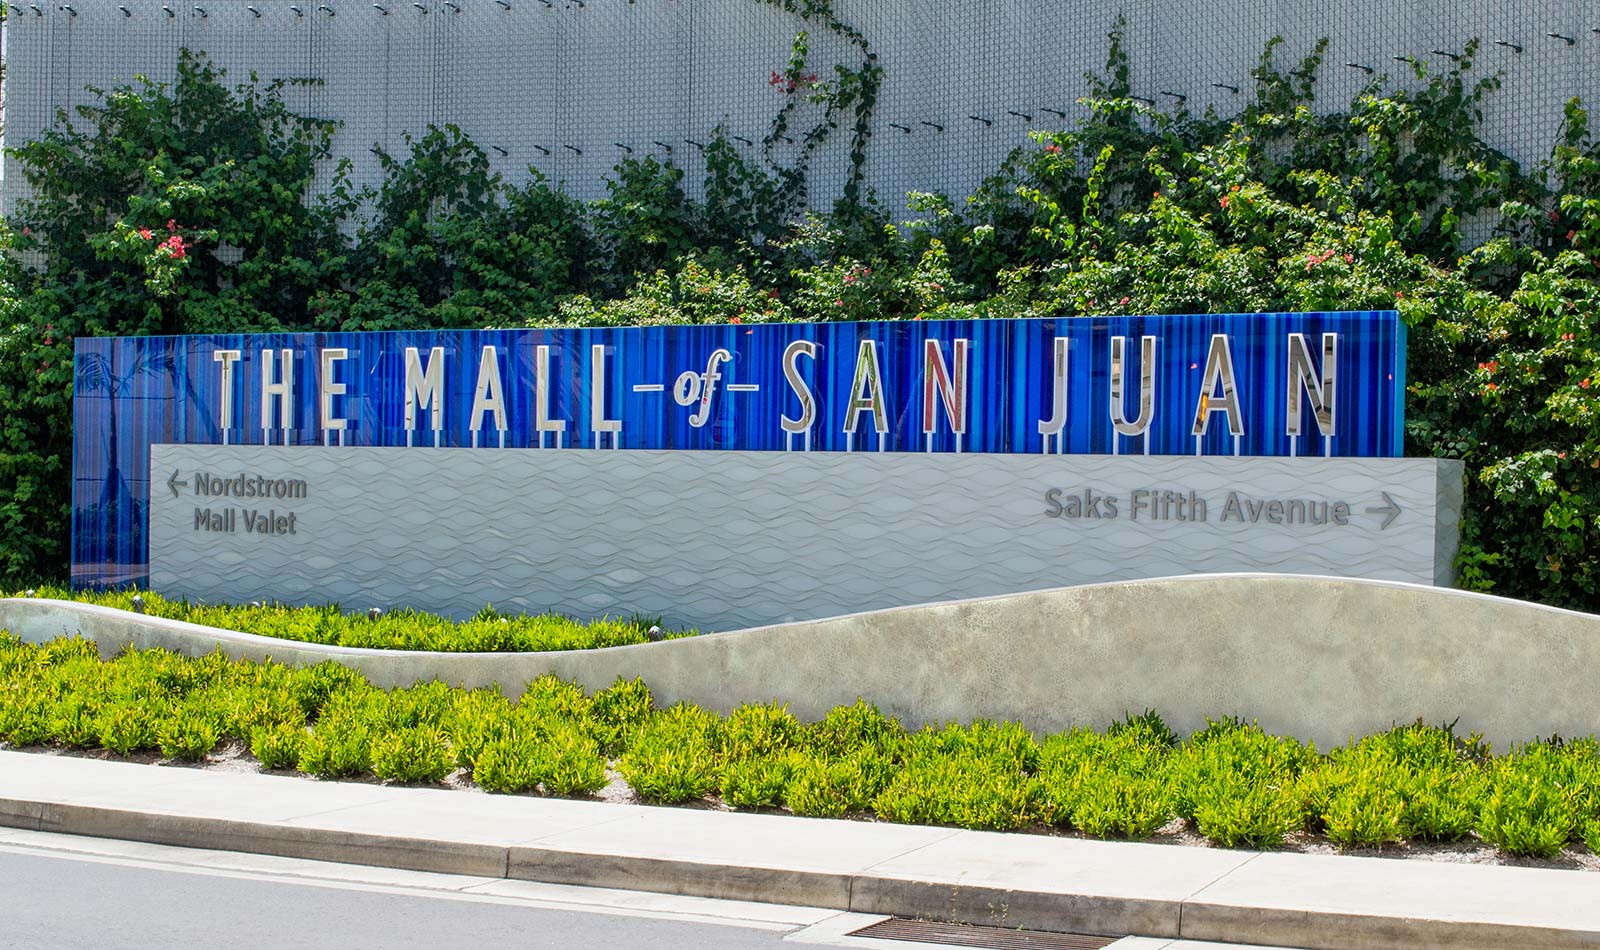 The Mall of San Juan - 505Design